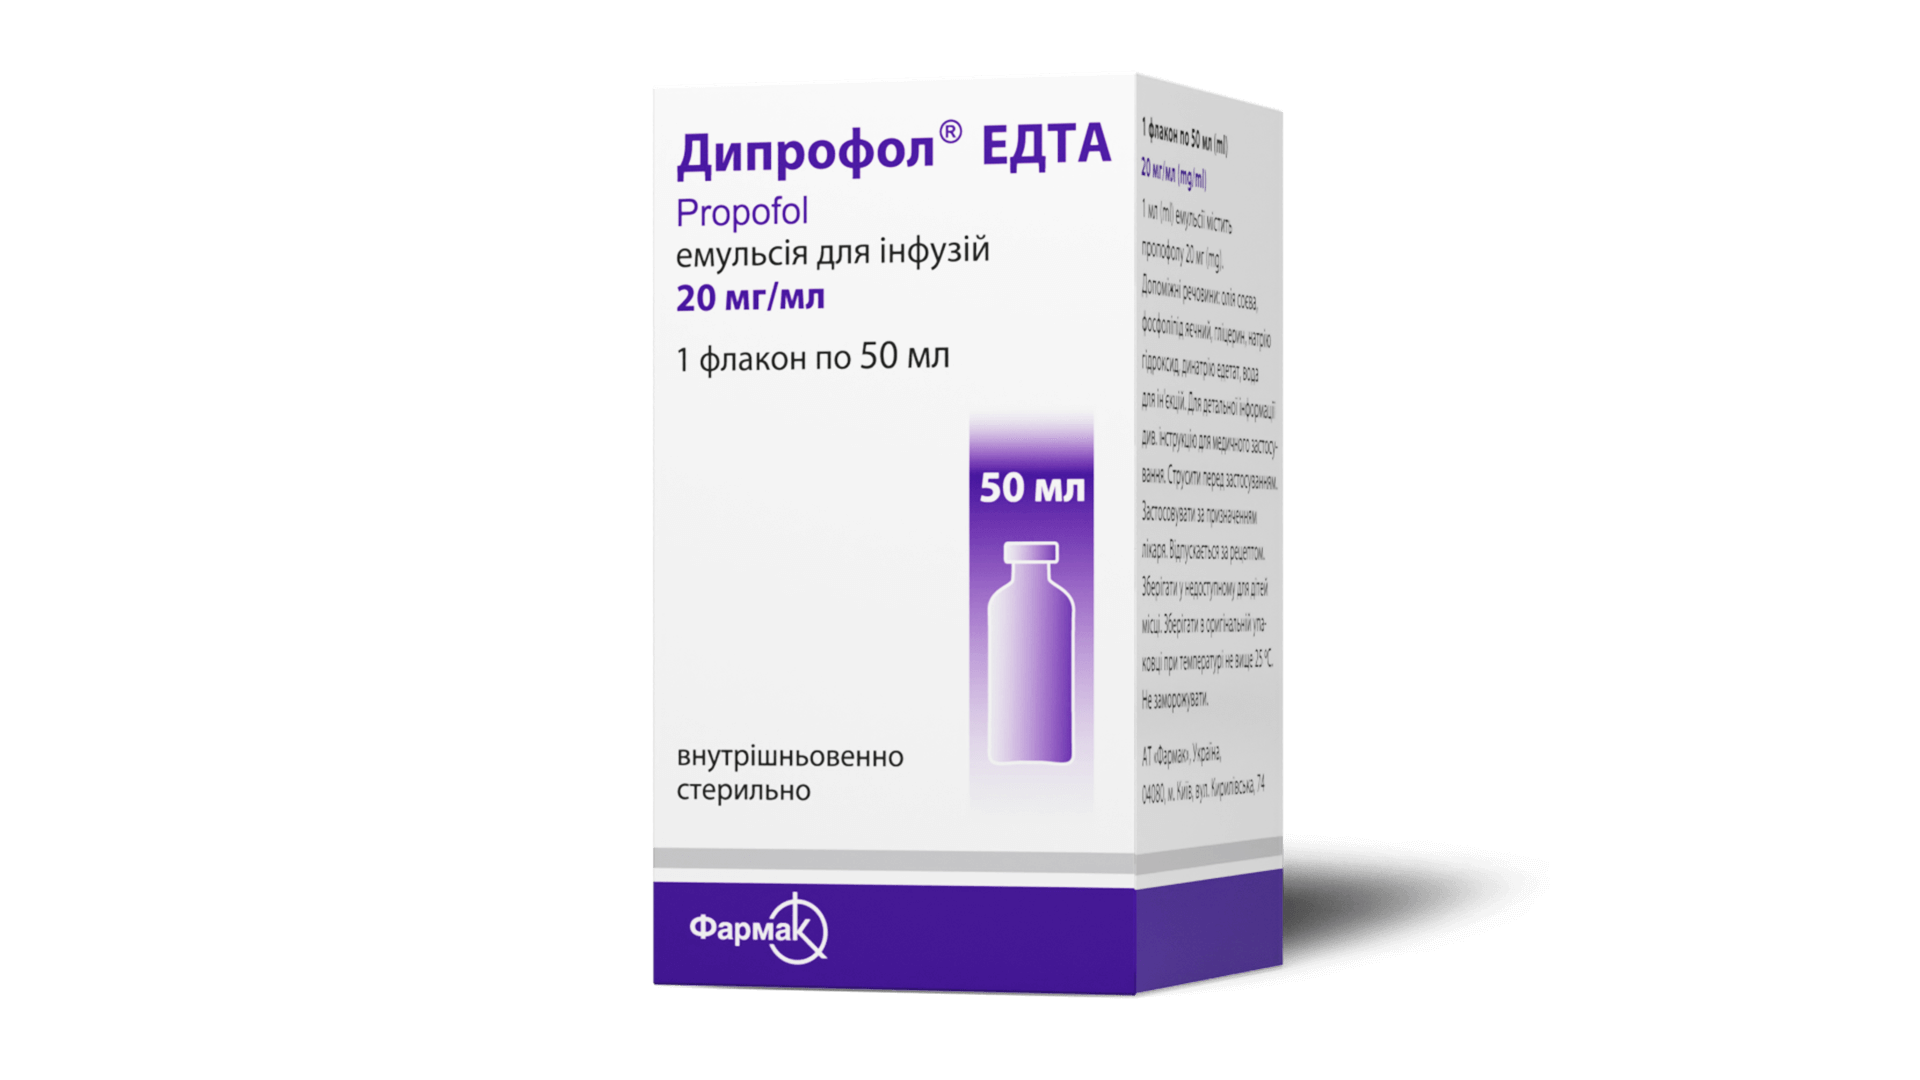 Дипрофол® ЕДТА 2% (3)